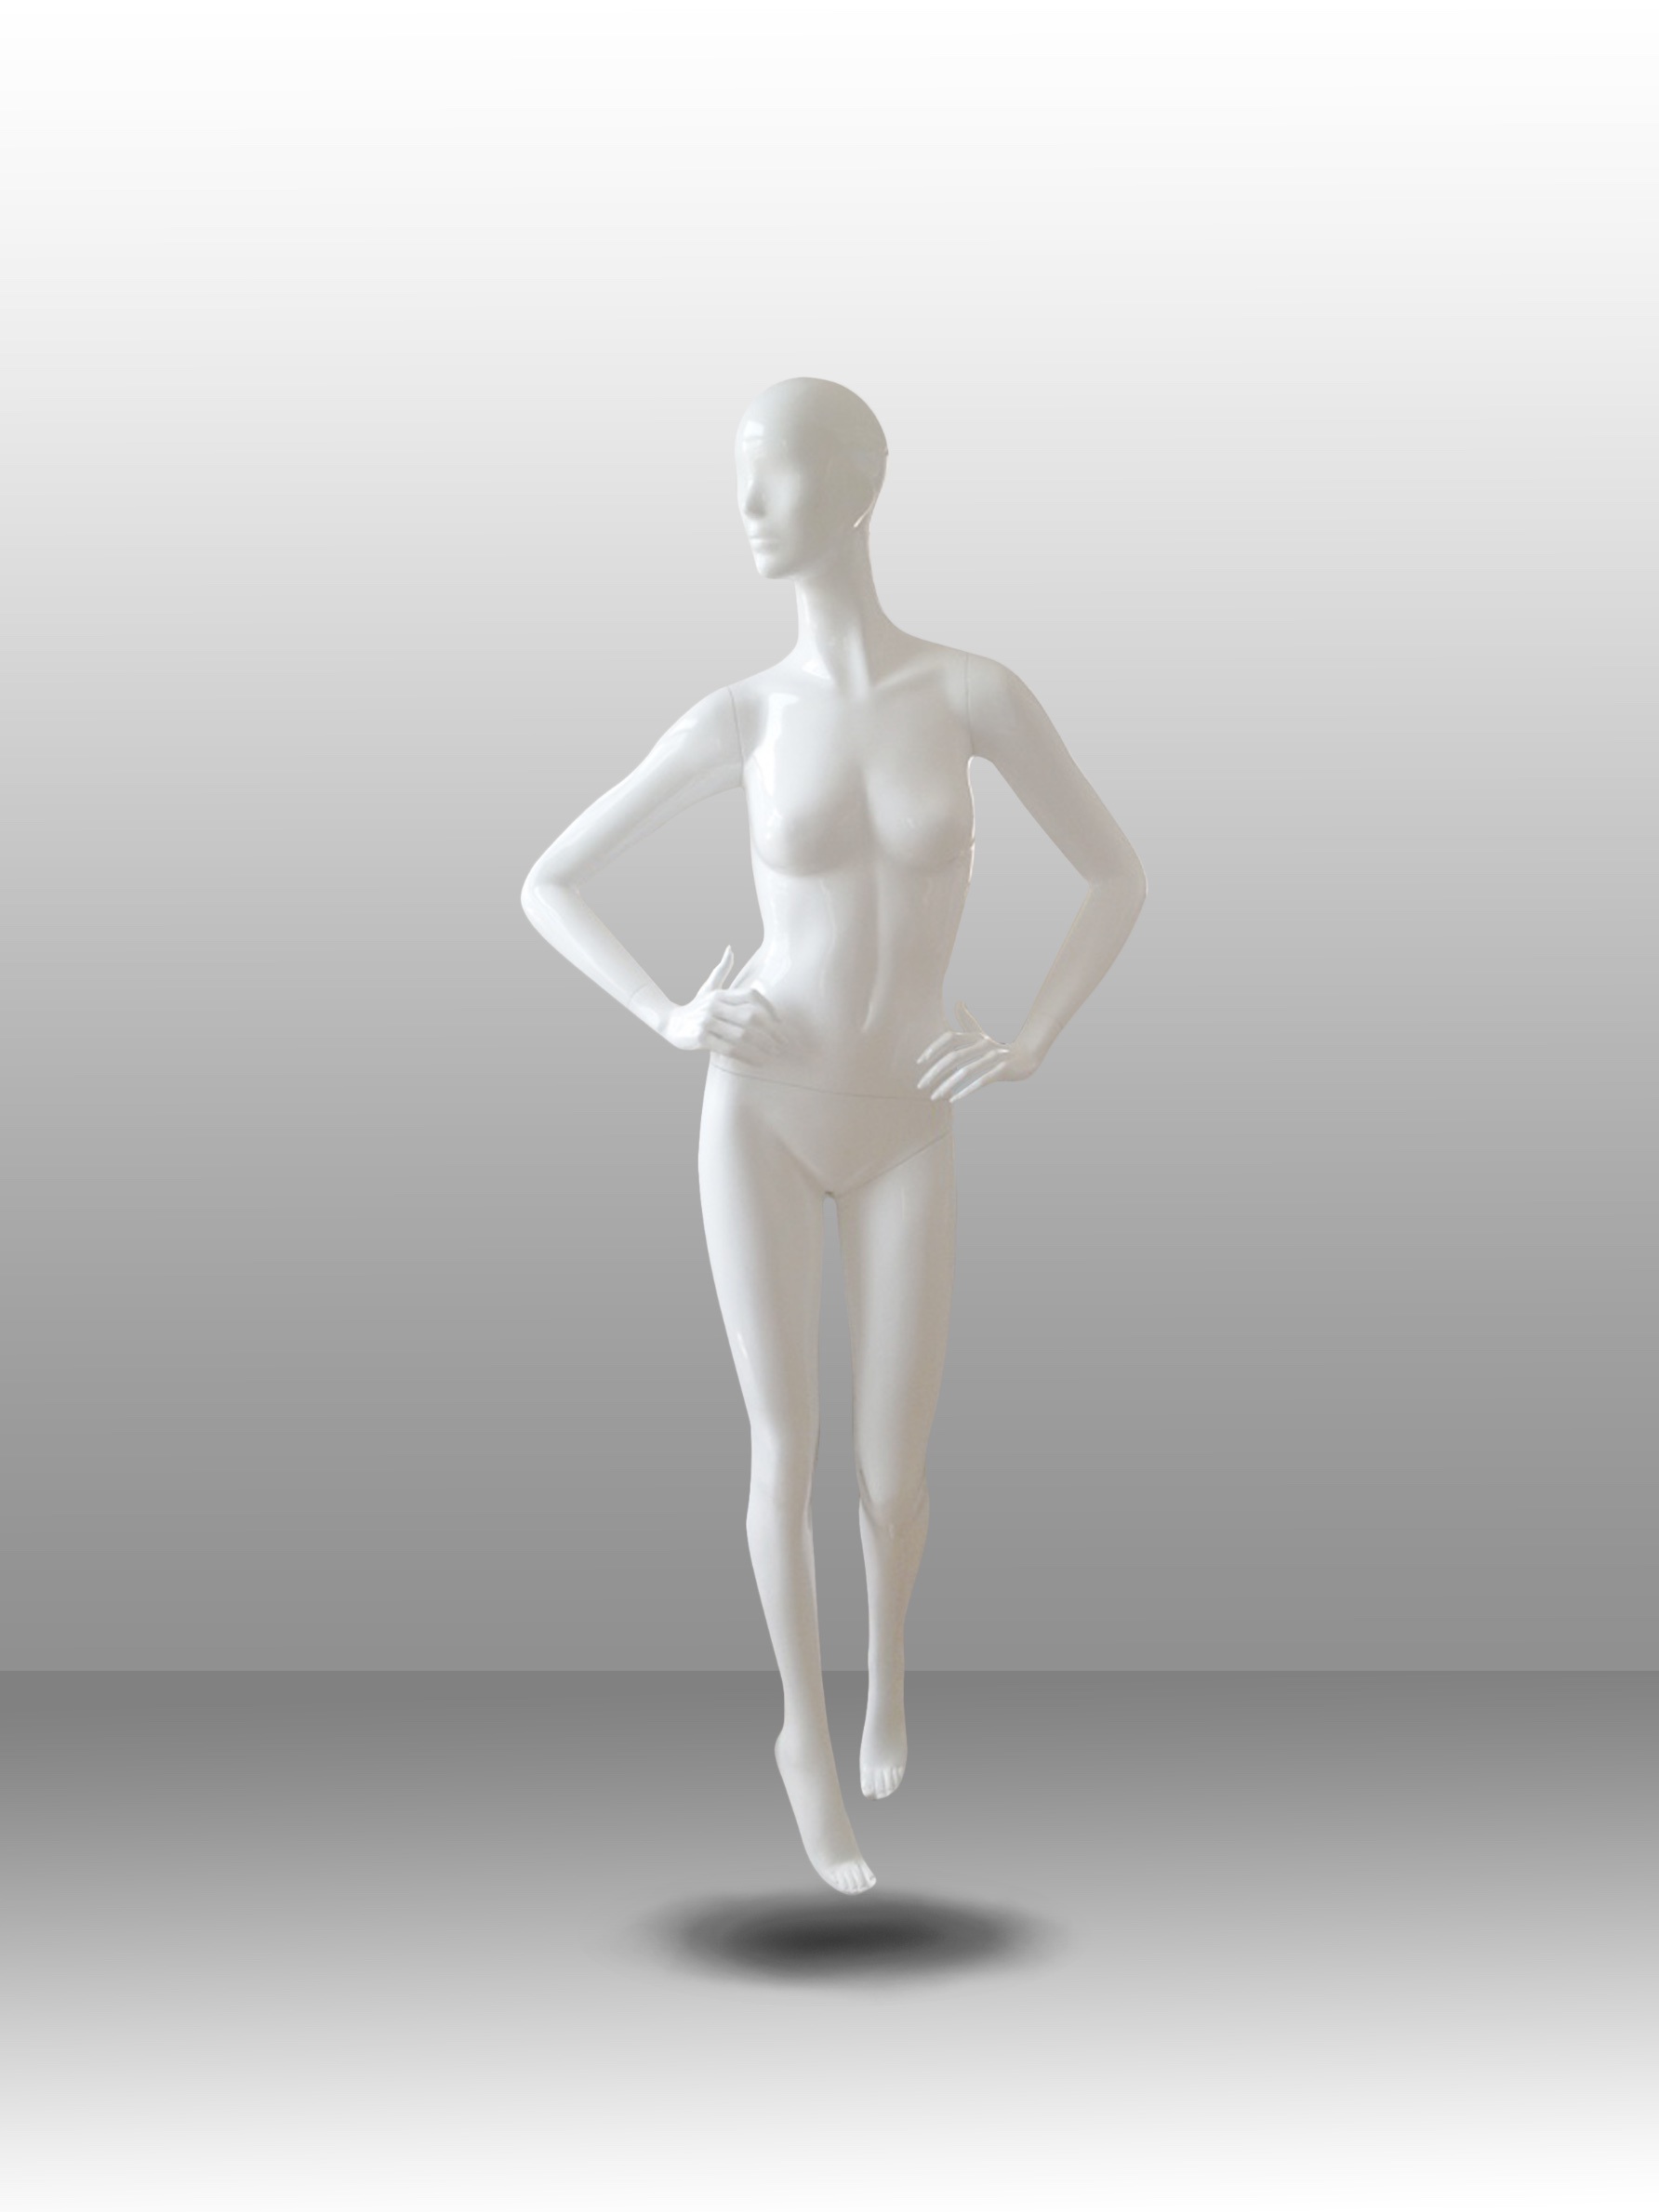 Full Body FRP Female Mannequin